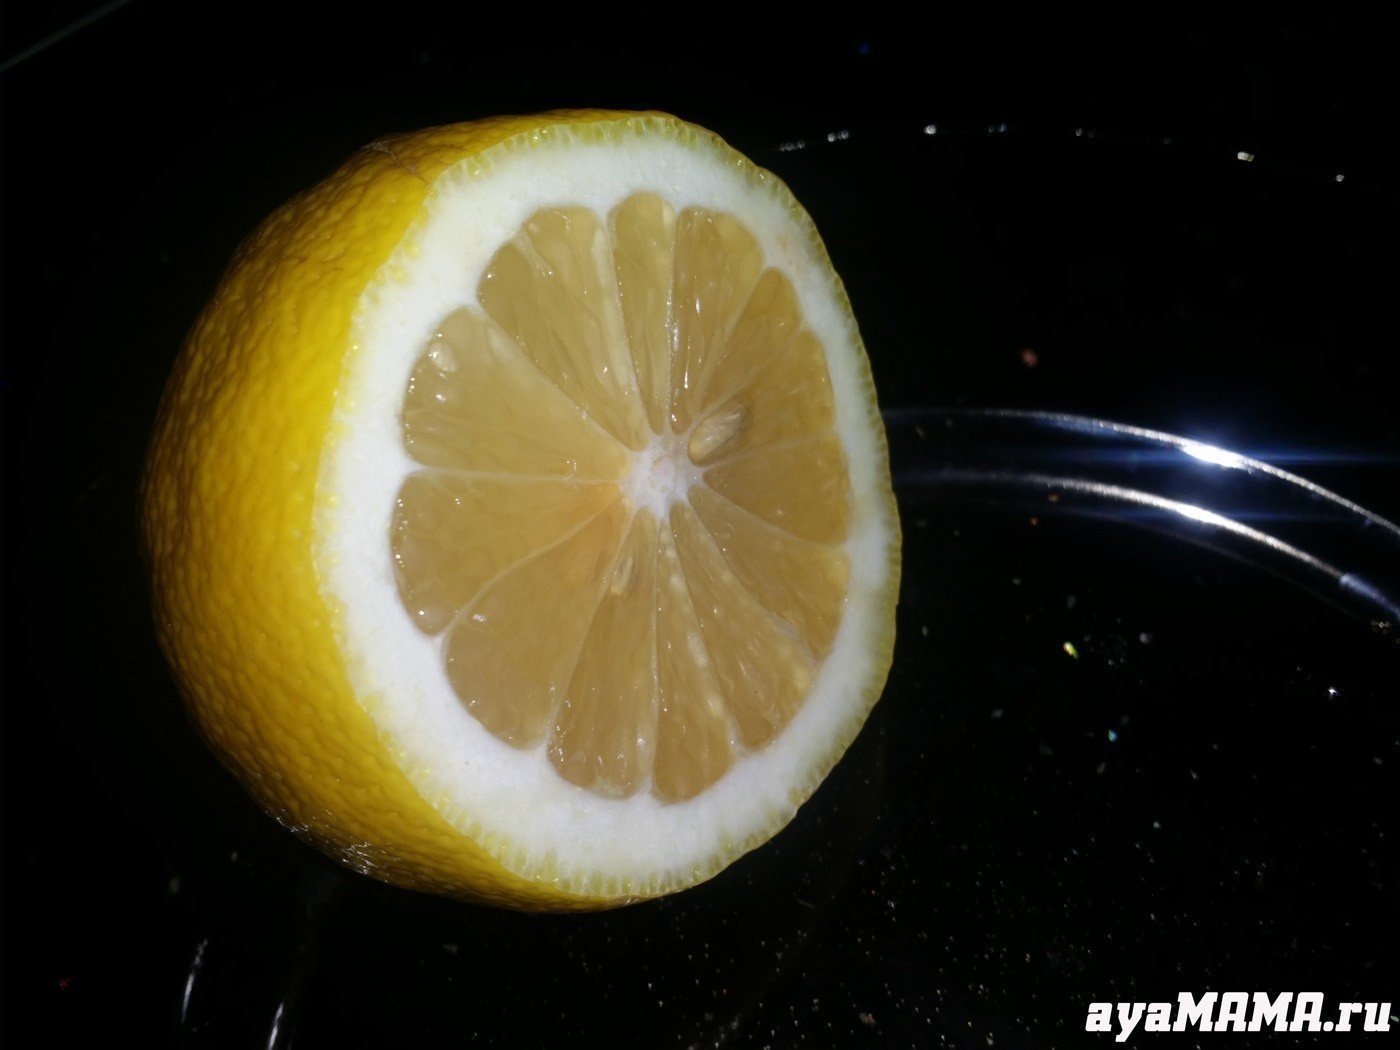 Лимонная кислота и лимонный сок